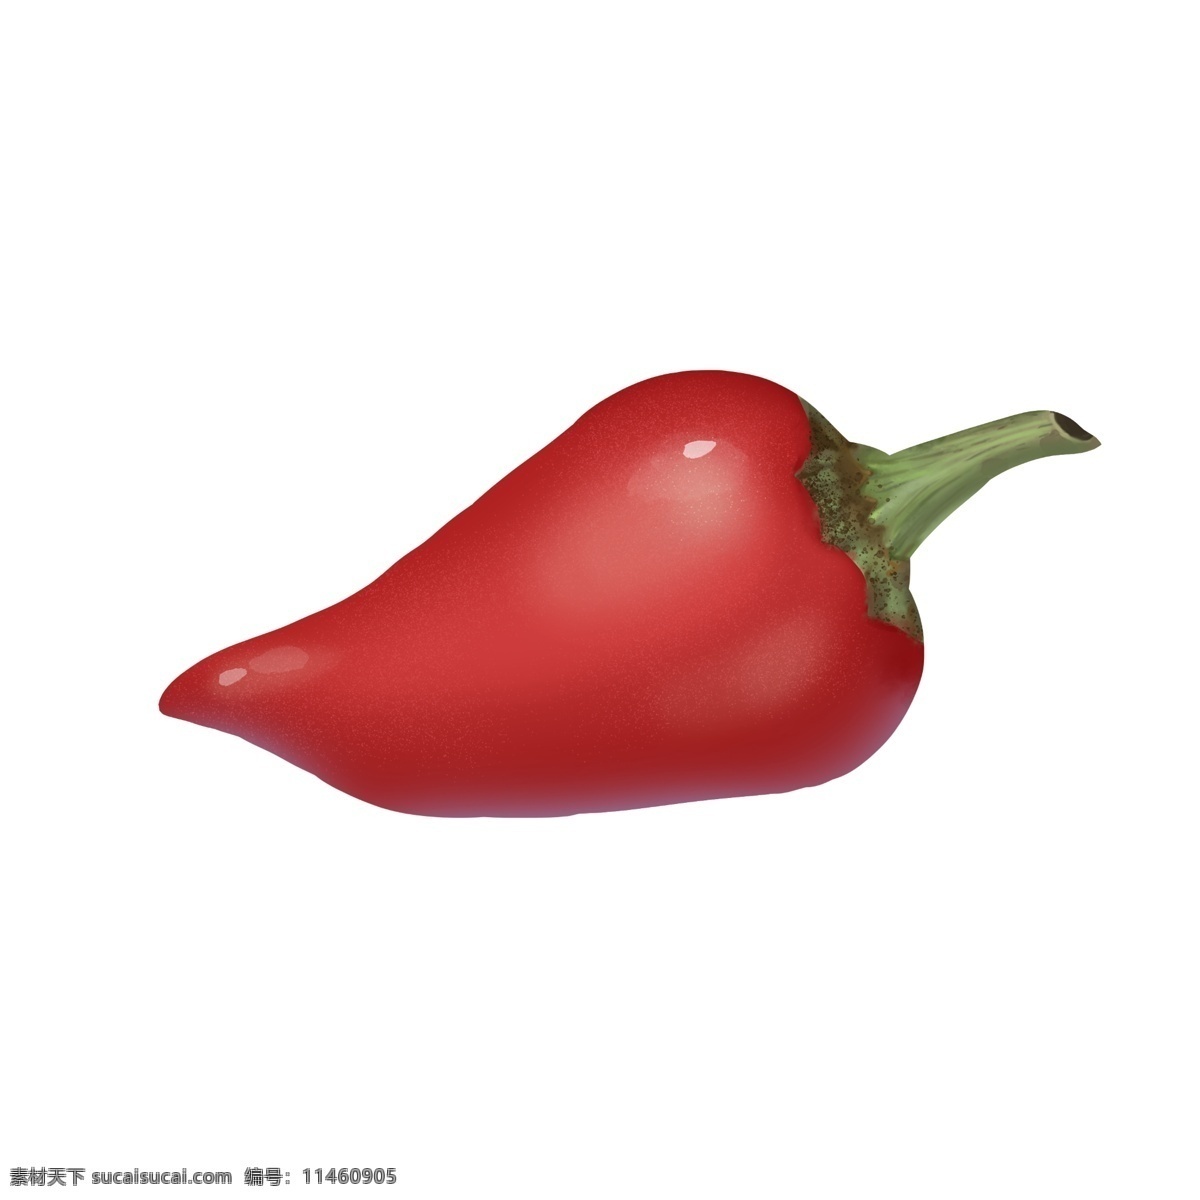 颗 红色 大 辣椒 一颗辣椒 红辣椒 胖辣椒 食物 食材 刺激的食物 配料 佐料 免抠 大红辣椒 写实